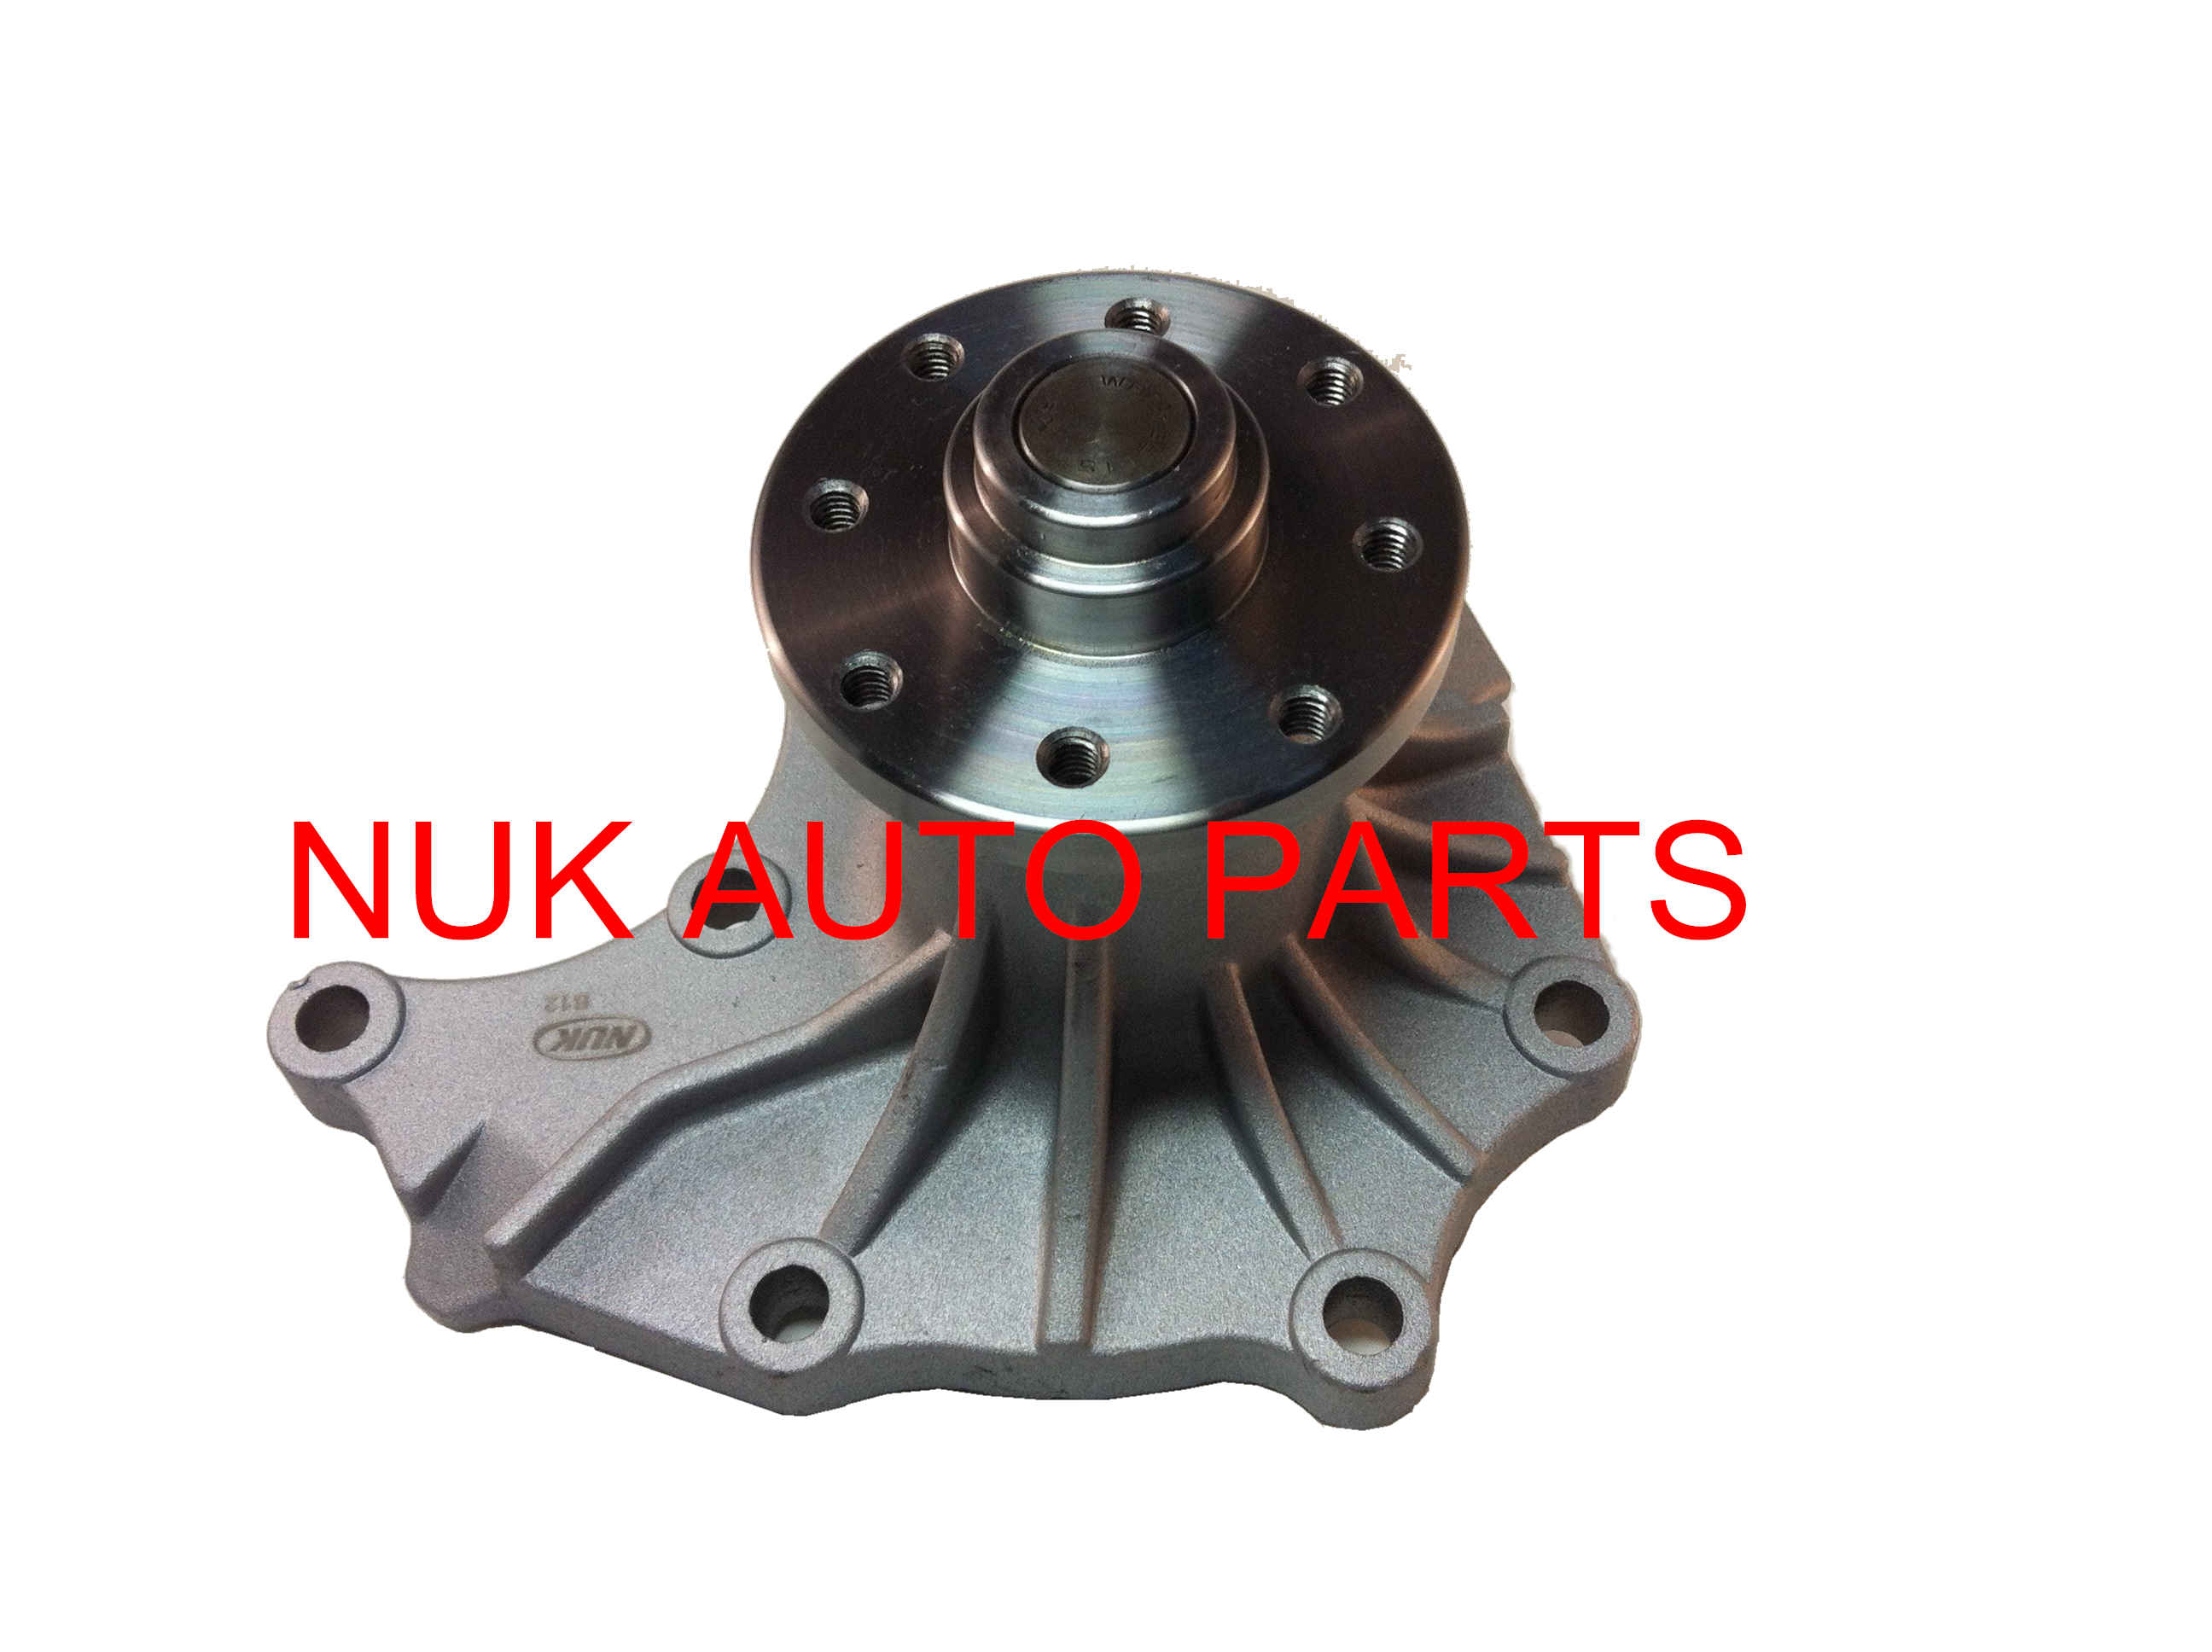 NUK Auto Parts Co., Ltd,--- auto part, automotive water pumps, fan